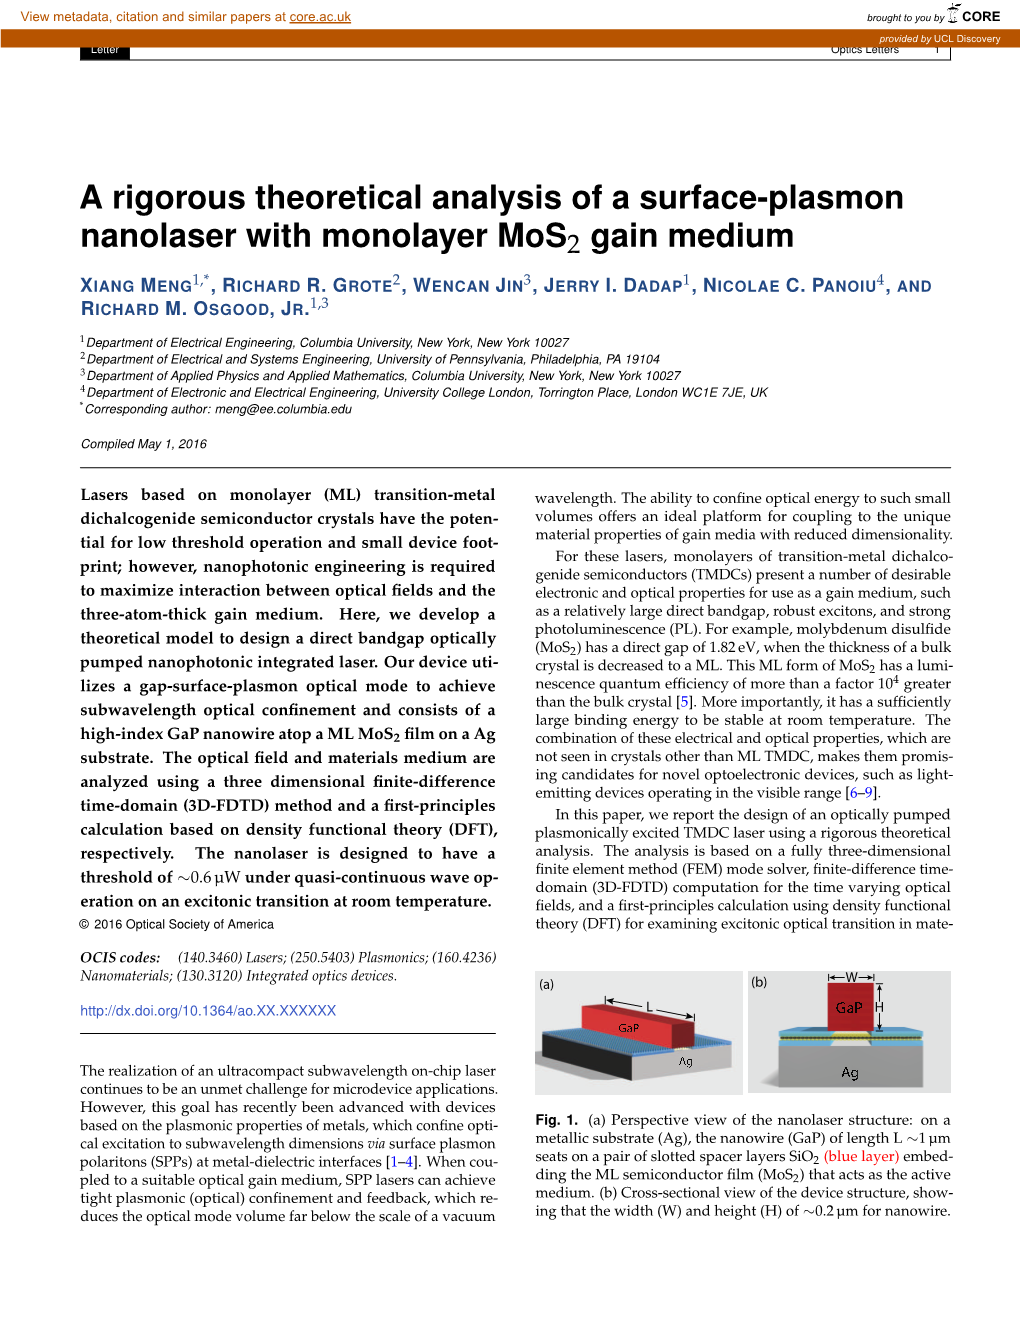 A Rigorous Theoretical Analysis of a Surface-Plasmon Nanolaser with Monolayer Mos2 Gain Medium